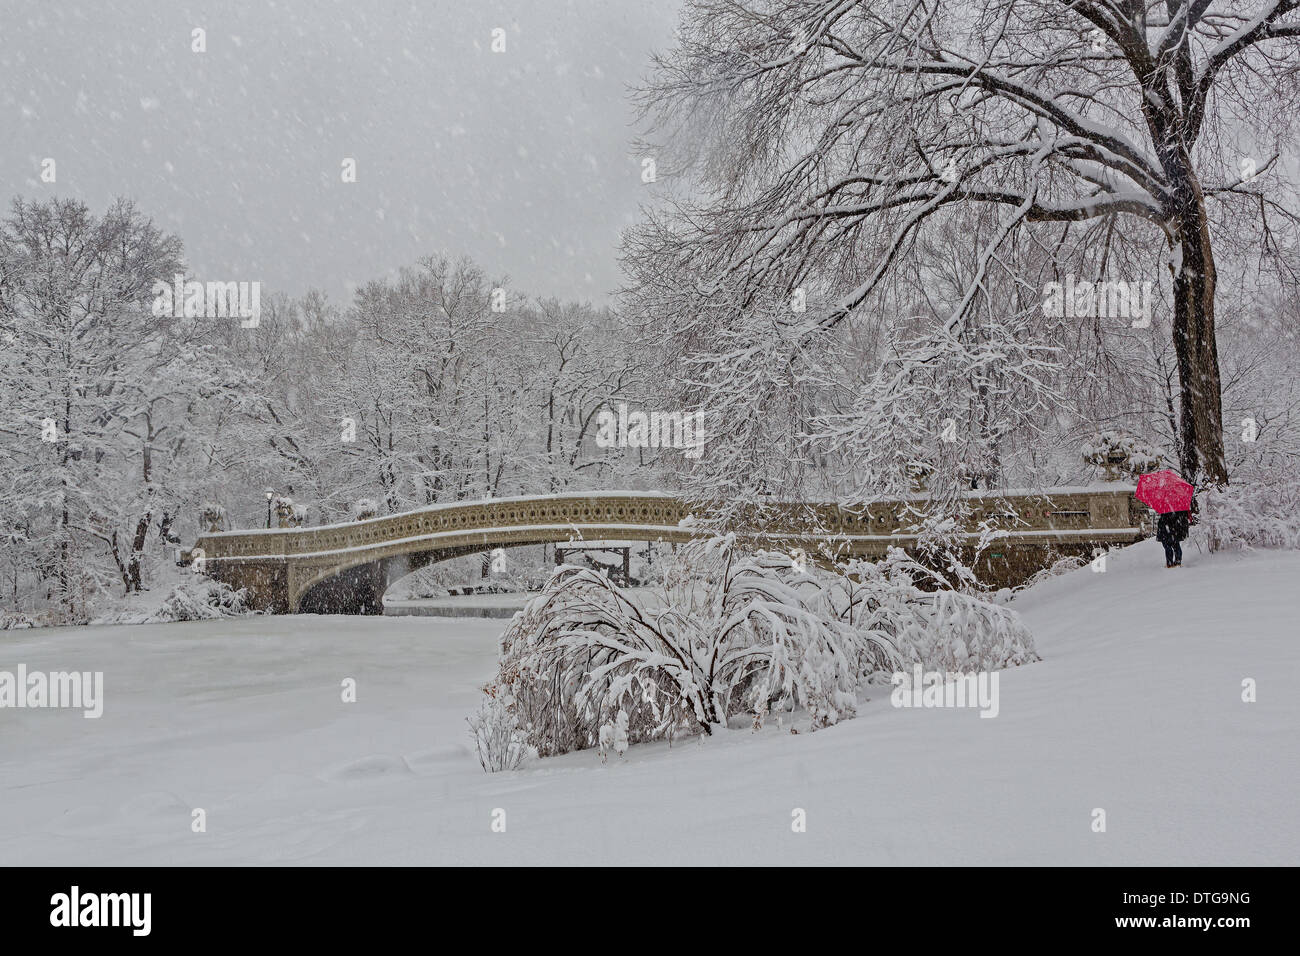 L'iconico punto di riferimento del ponte di prua in Central Park diventa una meraviglia invernale terra durante una tempesta di neve in inverno. Central Park si trova a New York City. La ghisa ponte di prua è il più grande ponte di Central Park e fu completato nel 1862. Foto Stock